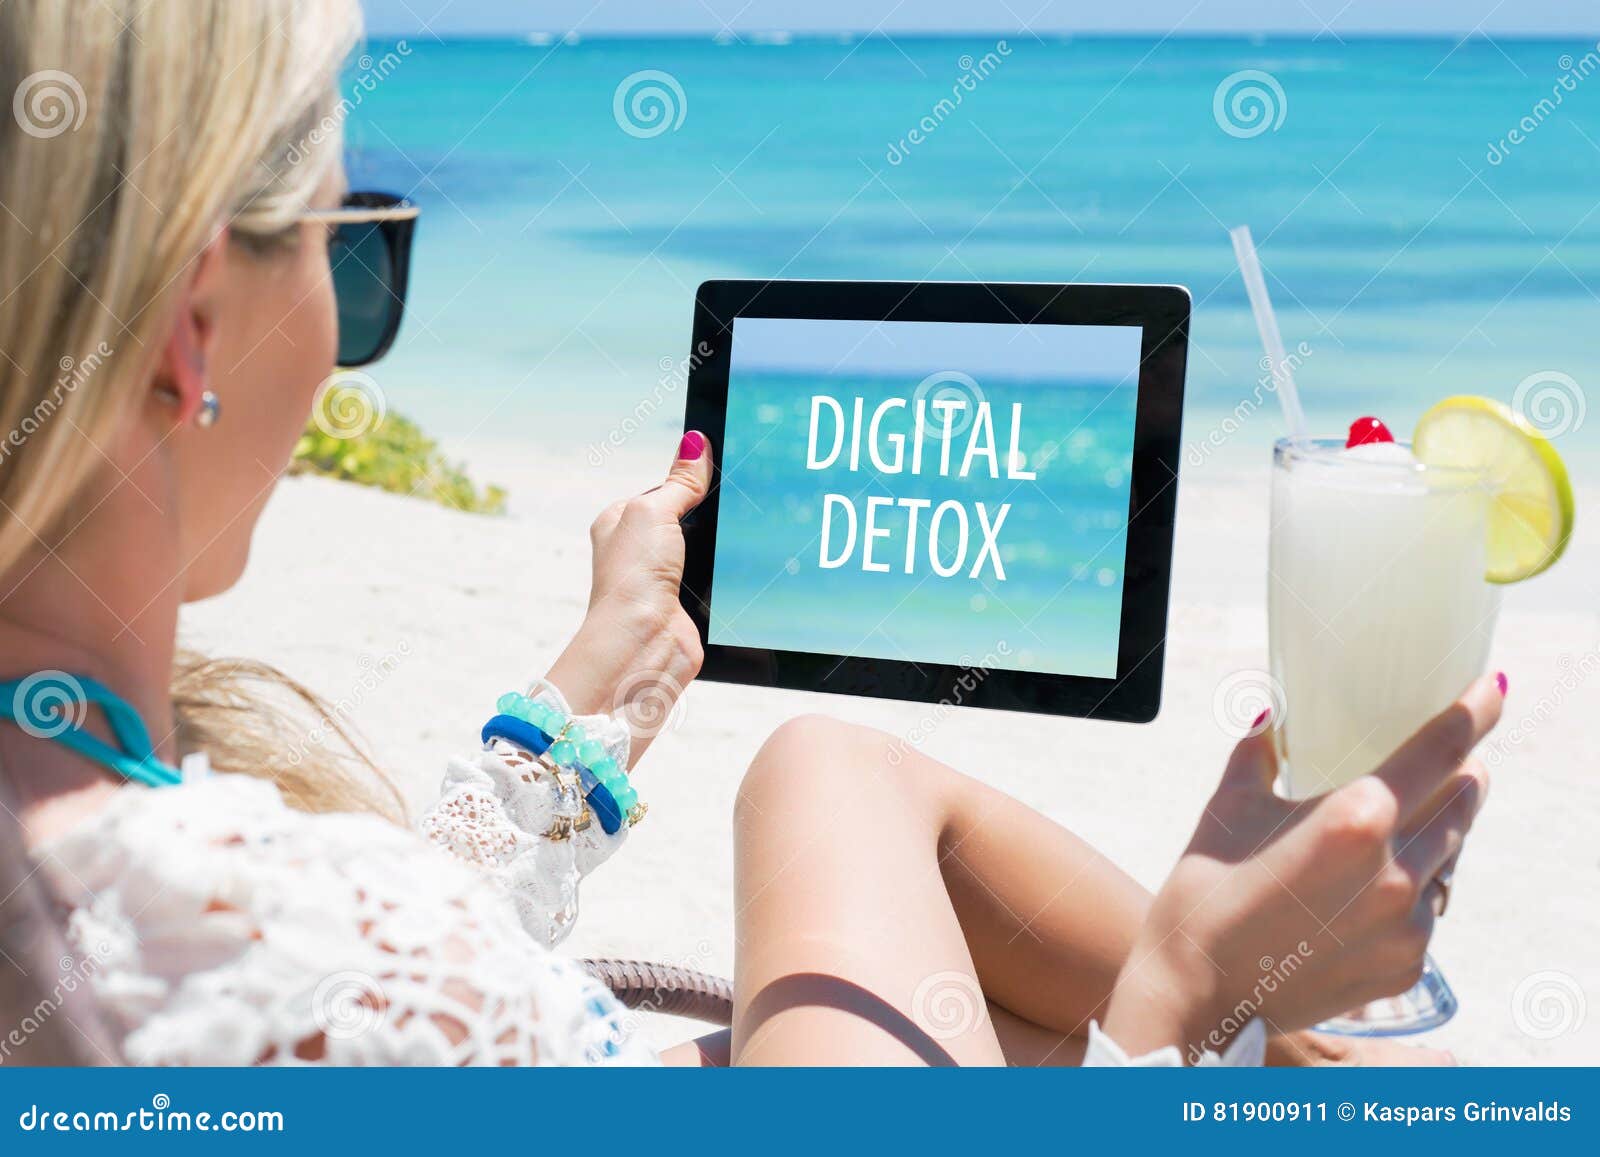 digital detox concept